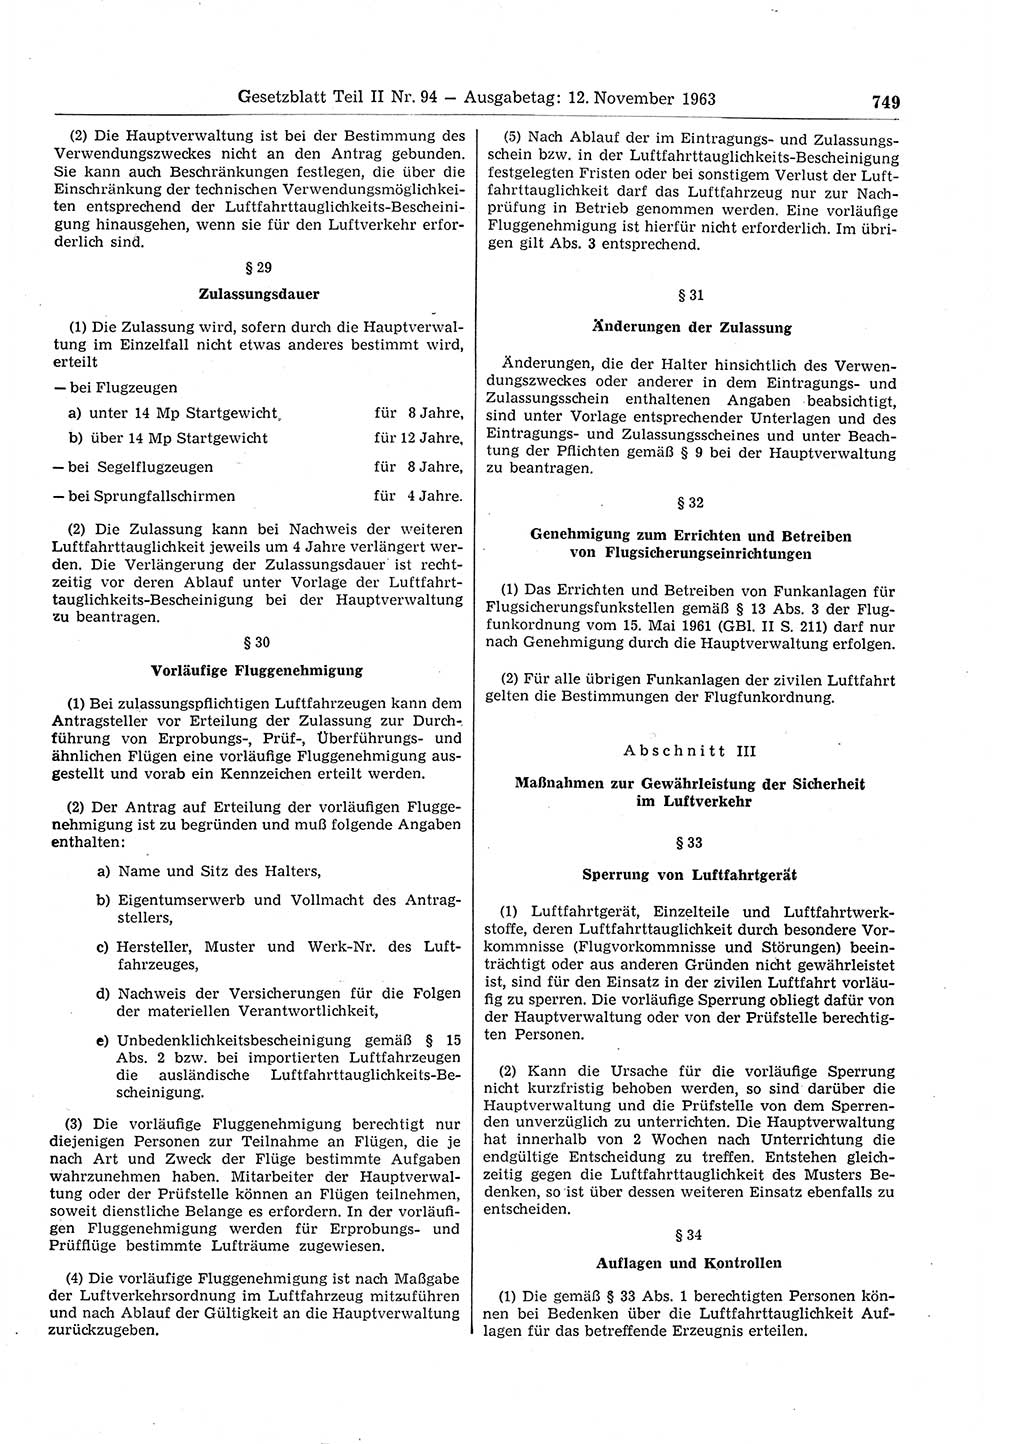 Gesetzblatt (GBl.) der Deutschen Demokratischen Republik (DDR) Teil ⅠⅠ 1963, Seite 749 (GBl. DDR ⅠⅠ 1963, S. 749)